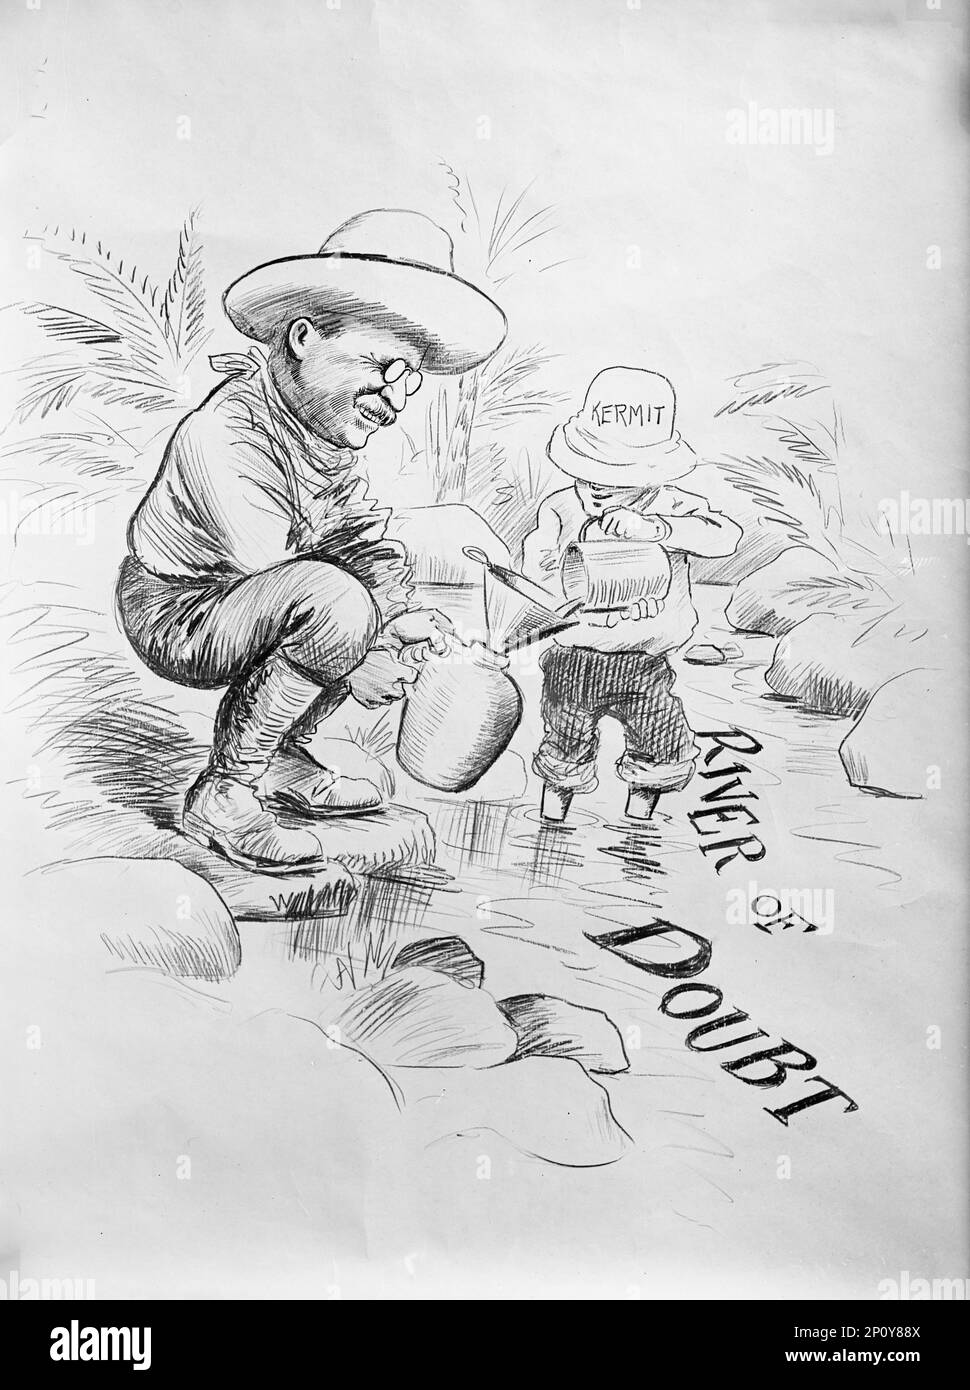 Theodore Roosevelt - Cartoon sul 'fiume del dubbio', 1914. Roosevelt e suo figlio Kermit fecero una spedizione nel bacino dell'Amazzonia in Brasile per esplorare e mappare l'area del fiume del dubbio, in seguito rinominato Rio Roosevelt in onore del presidente. Padre e figlio hanno contratto la malaria durante la spedizione. Foto Stock